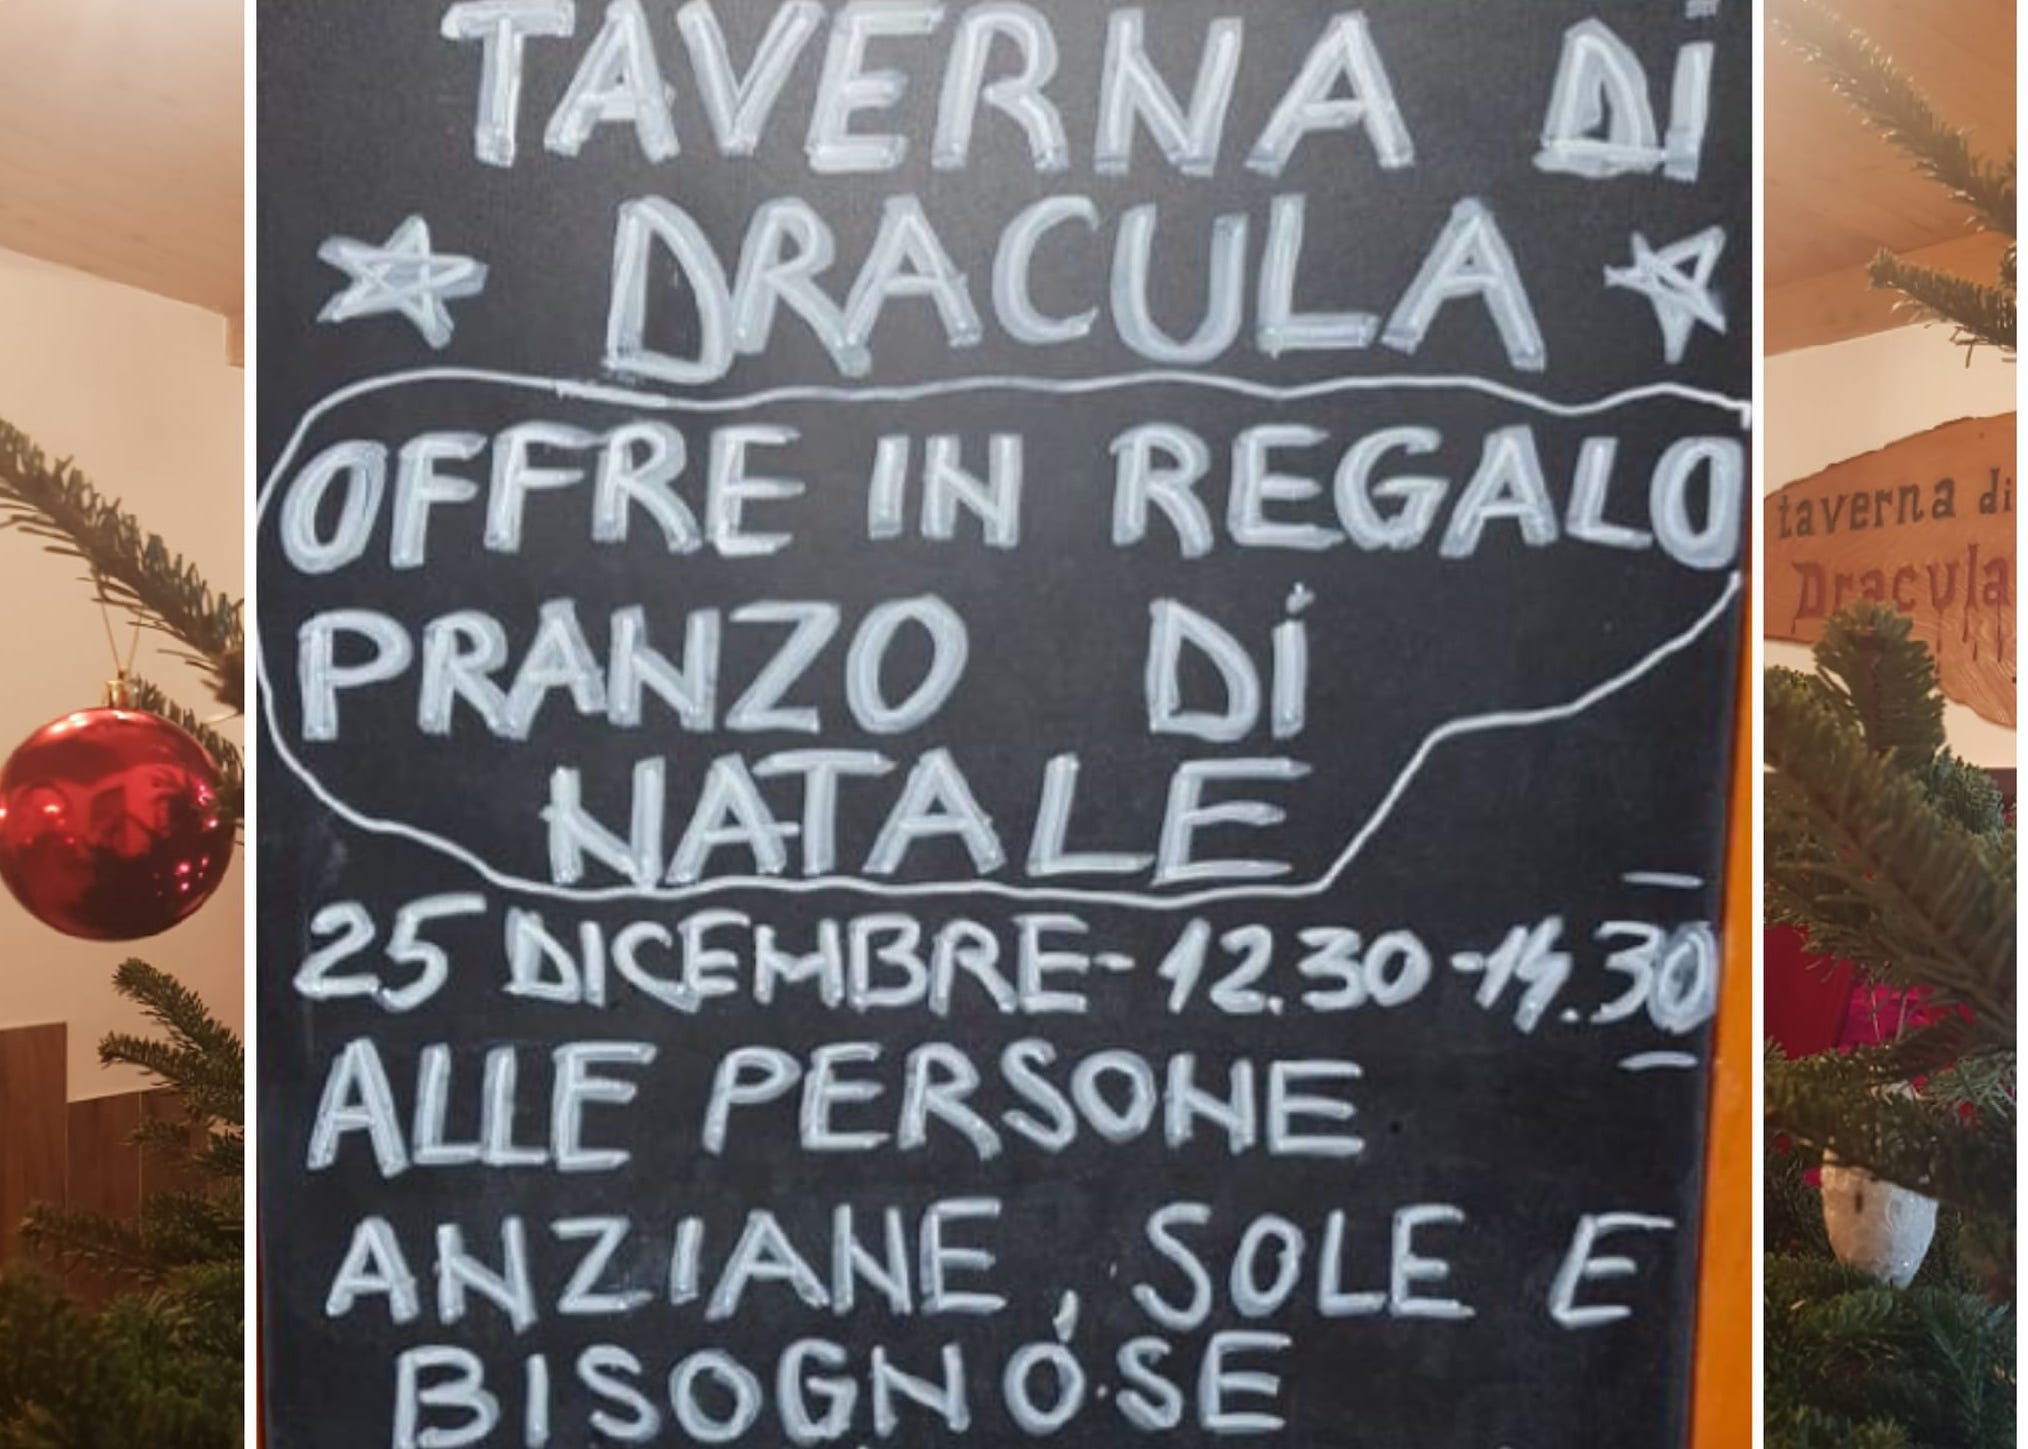 Pranzo di Natale gratis alla Taverna di Dracula